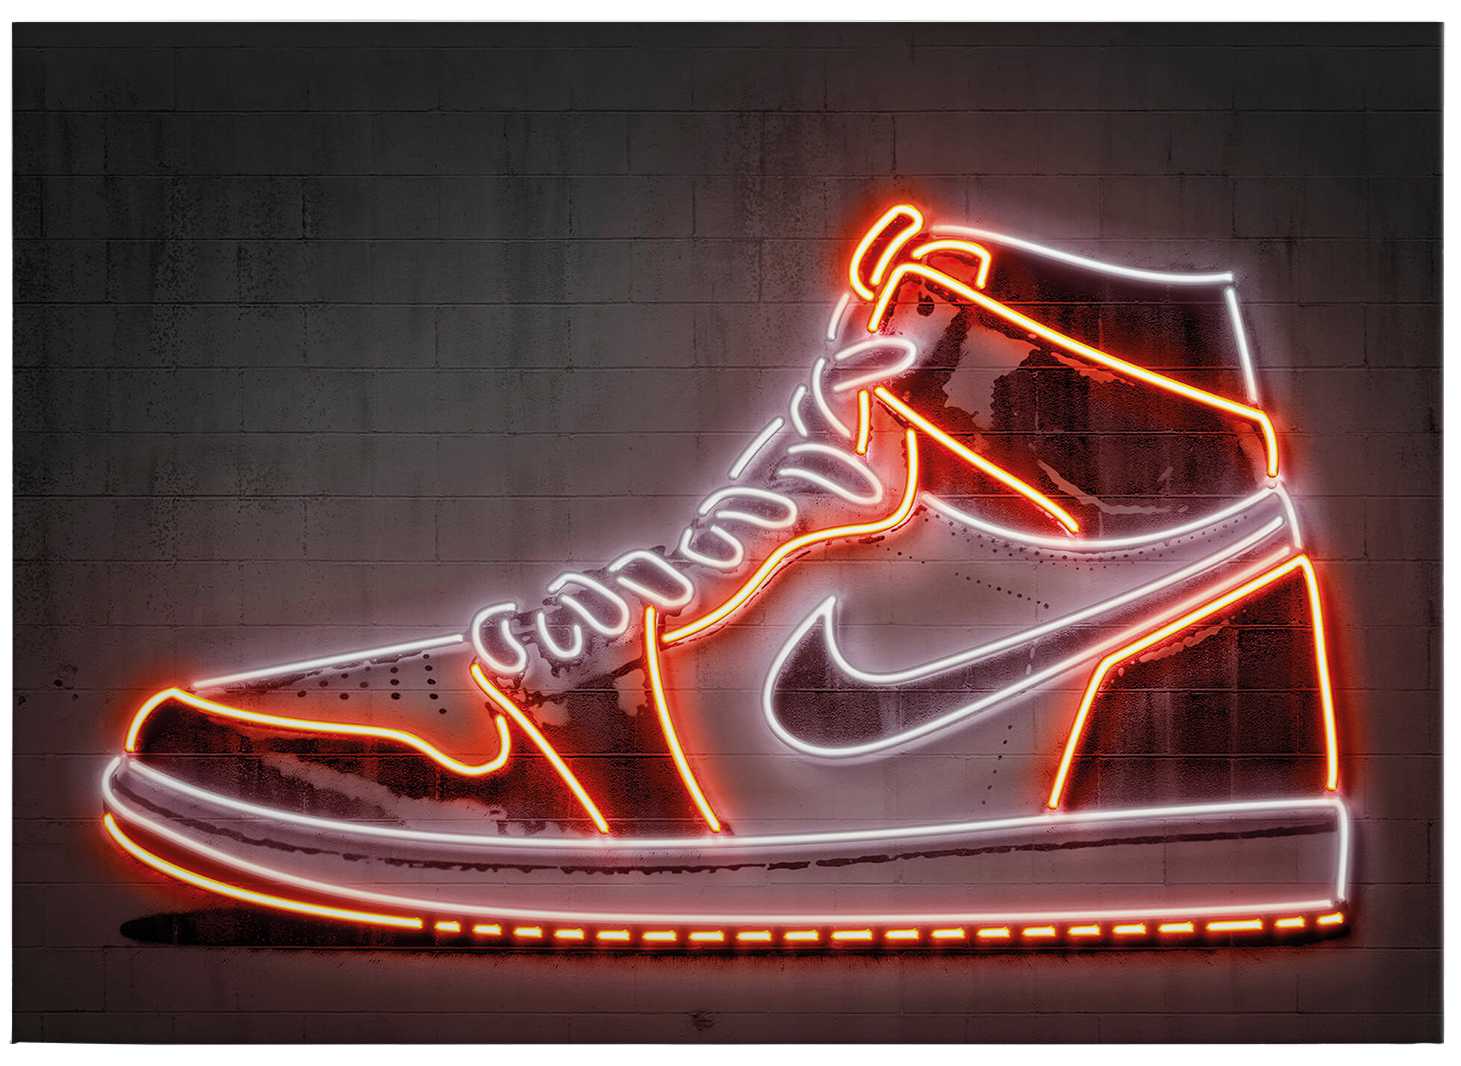             Leinwandbild Neonschild "Sneaker" von Mielu – 0,70 m x 0,50 m
        